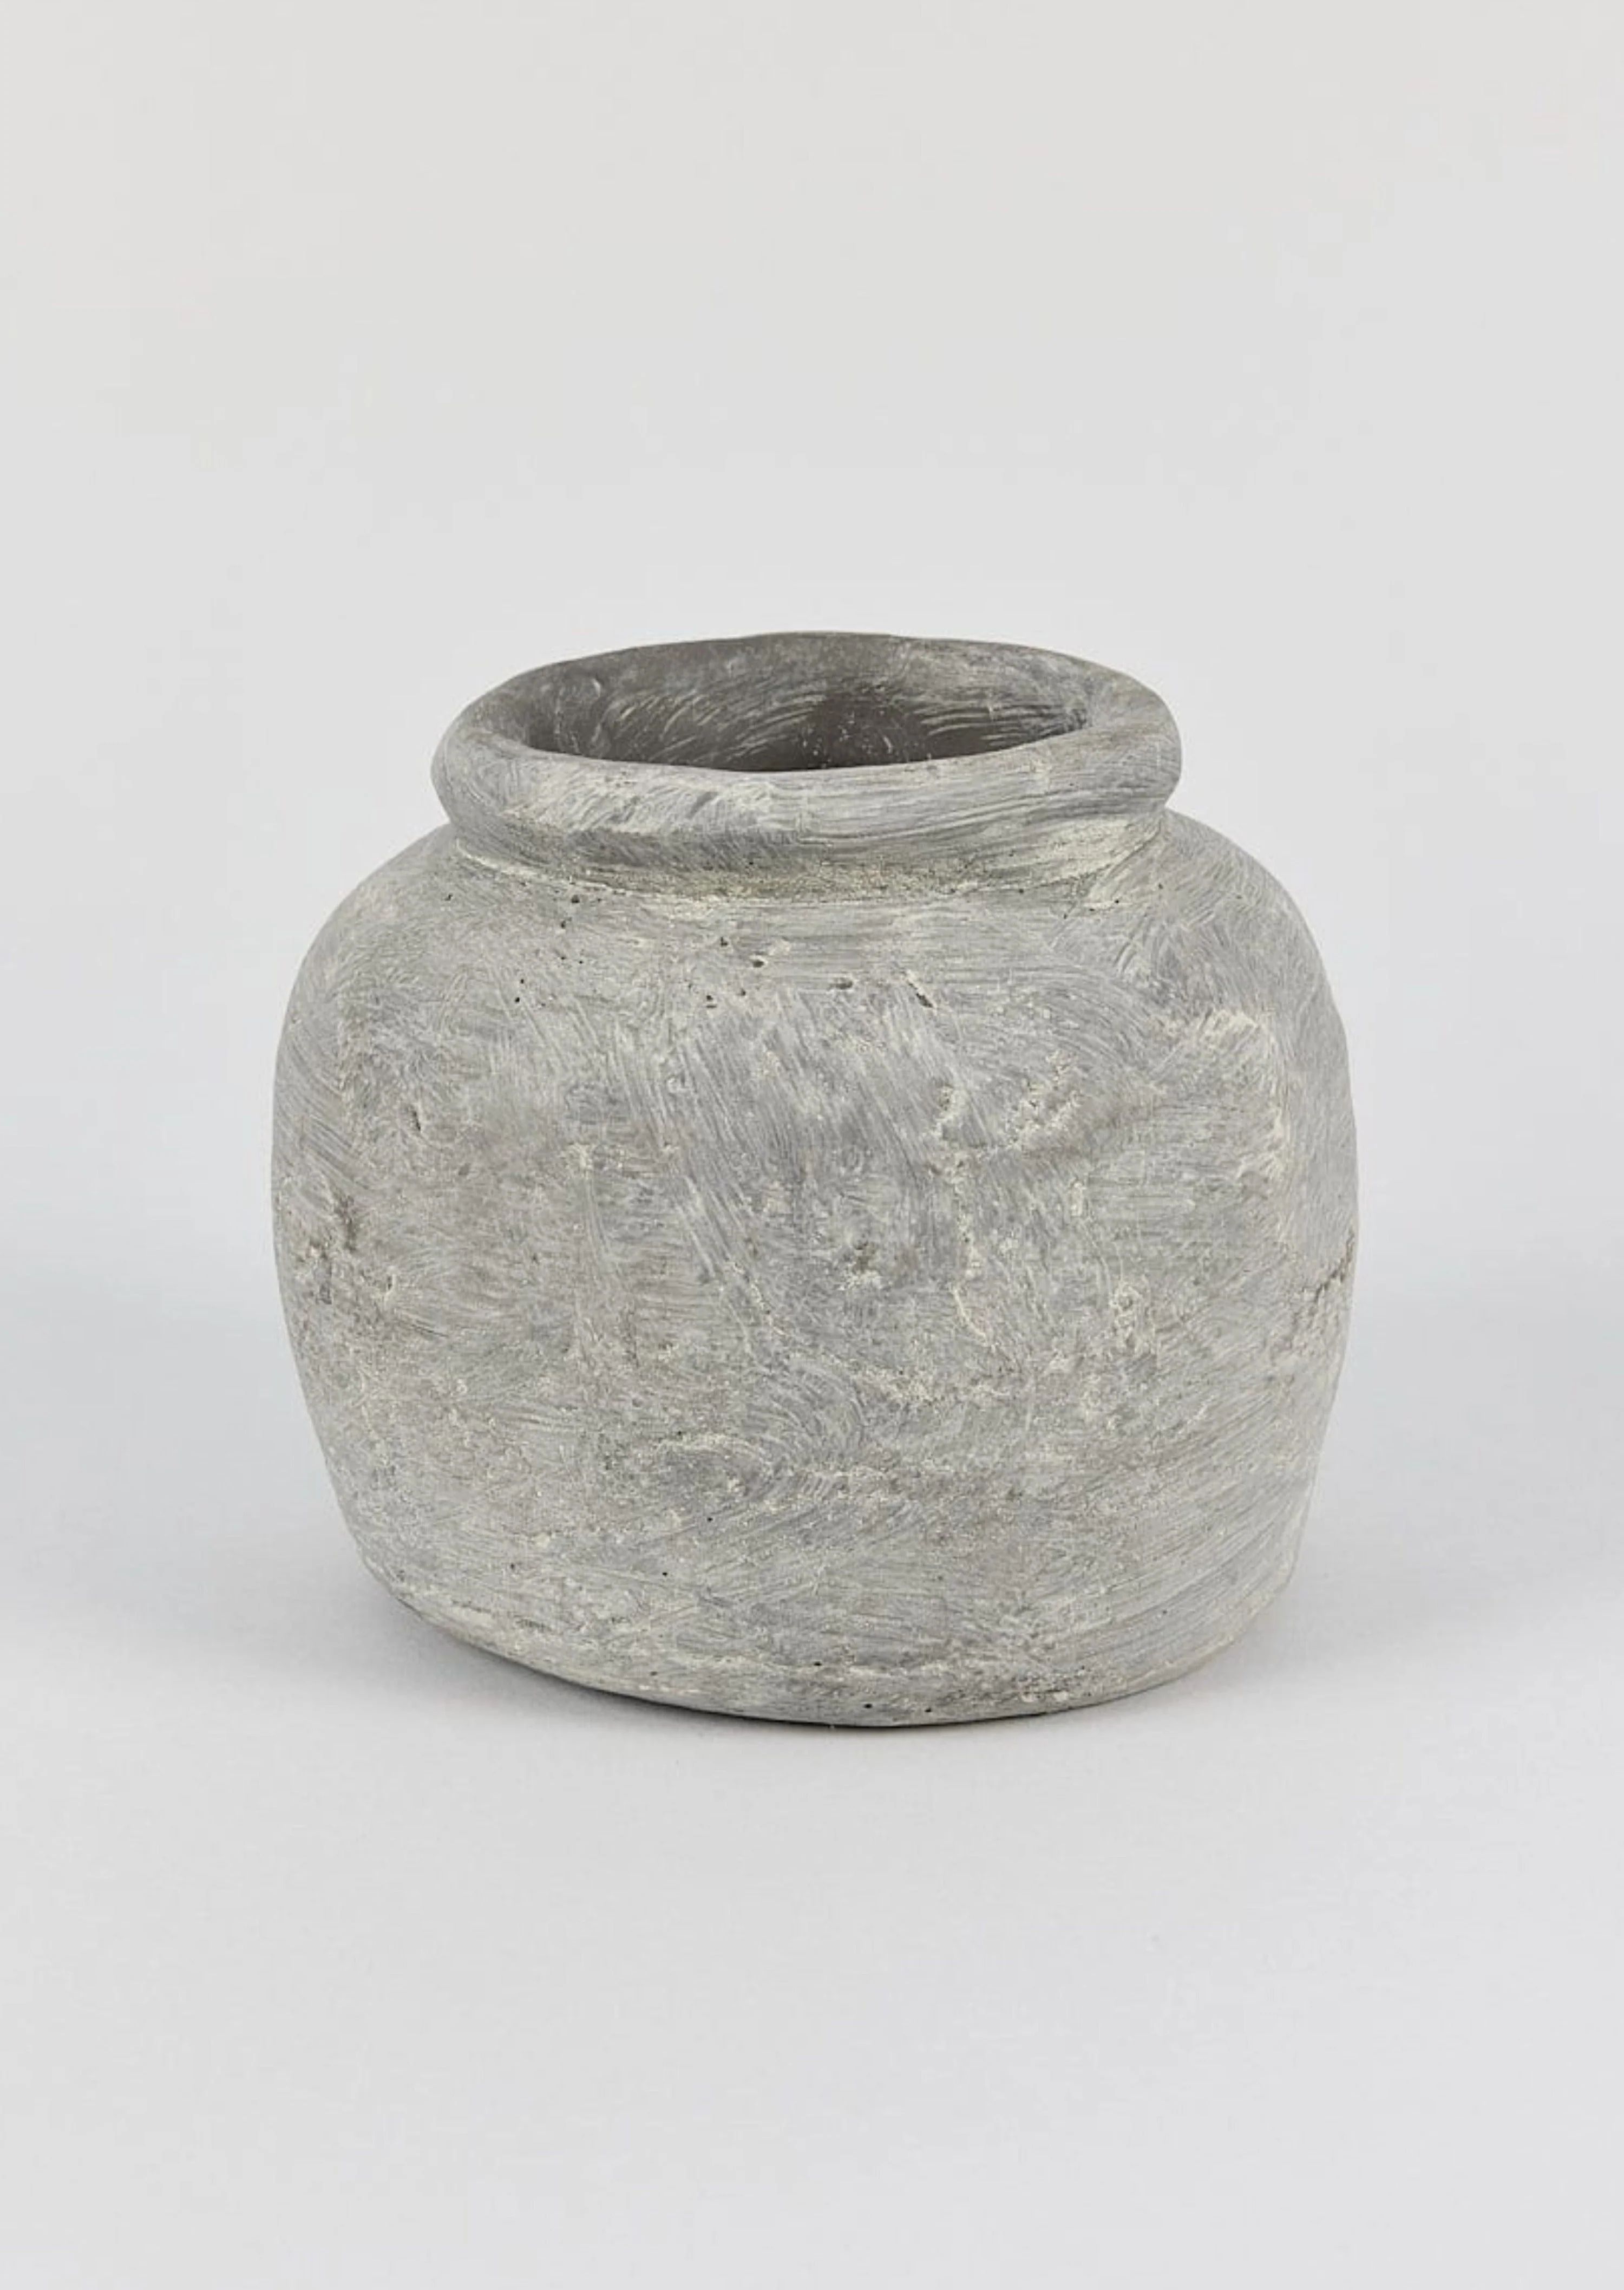 Distressed Concrete Grey Clay Pot | Boutique Planters at Afloral.com | Afloral